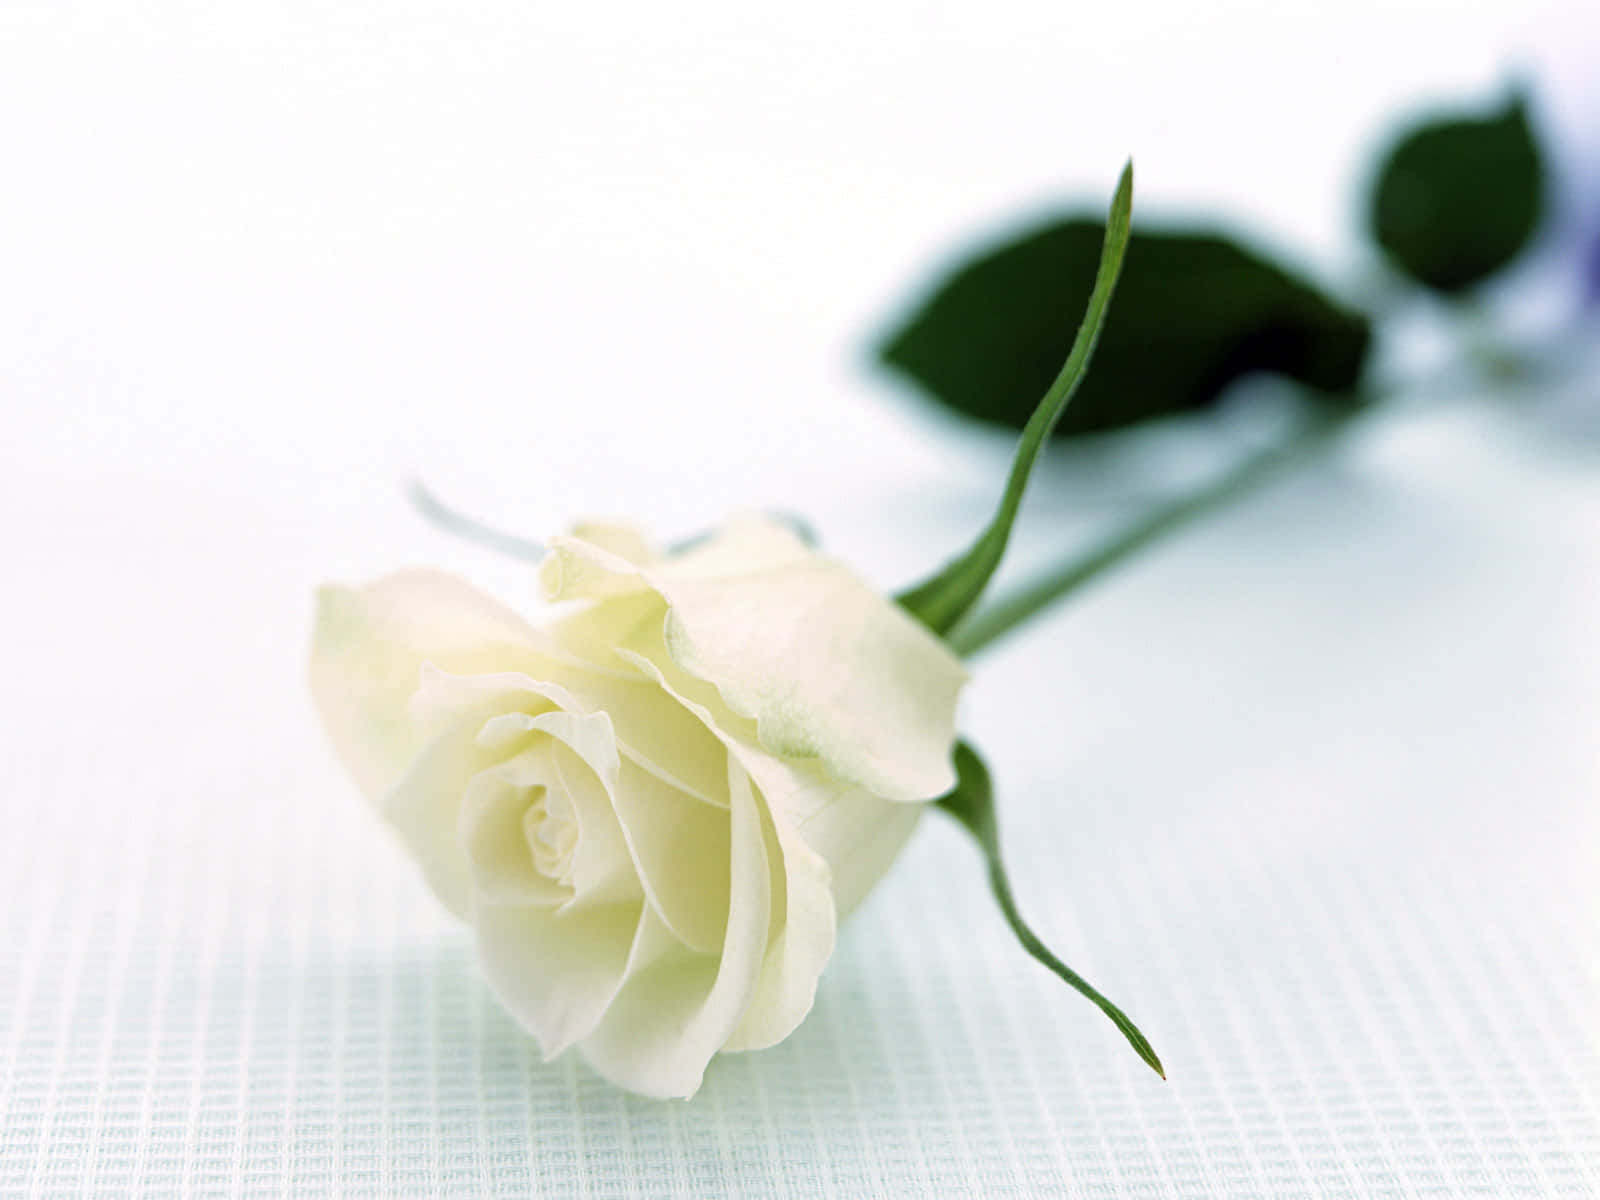 Et rent hvidt rose blomstrende i naturens herlighed.